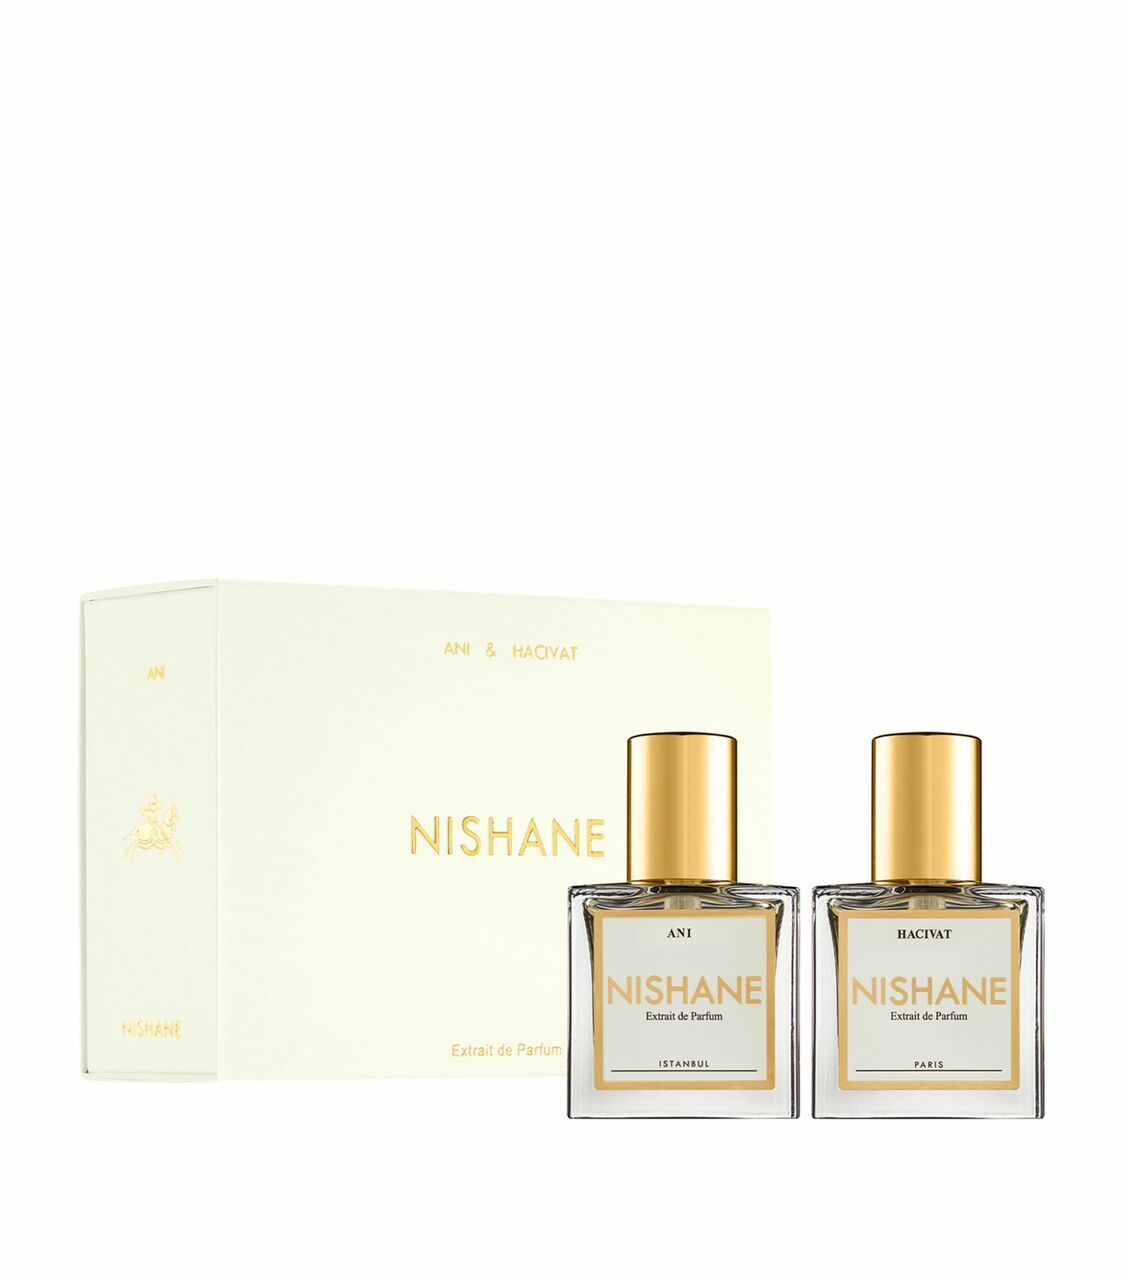 Nishane Twin Pack Hacivat and Ani Extrait De Parfum 2 x 15ml